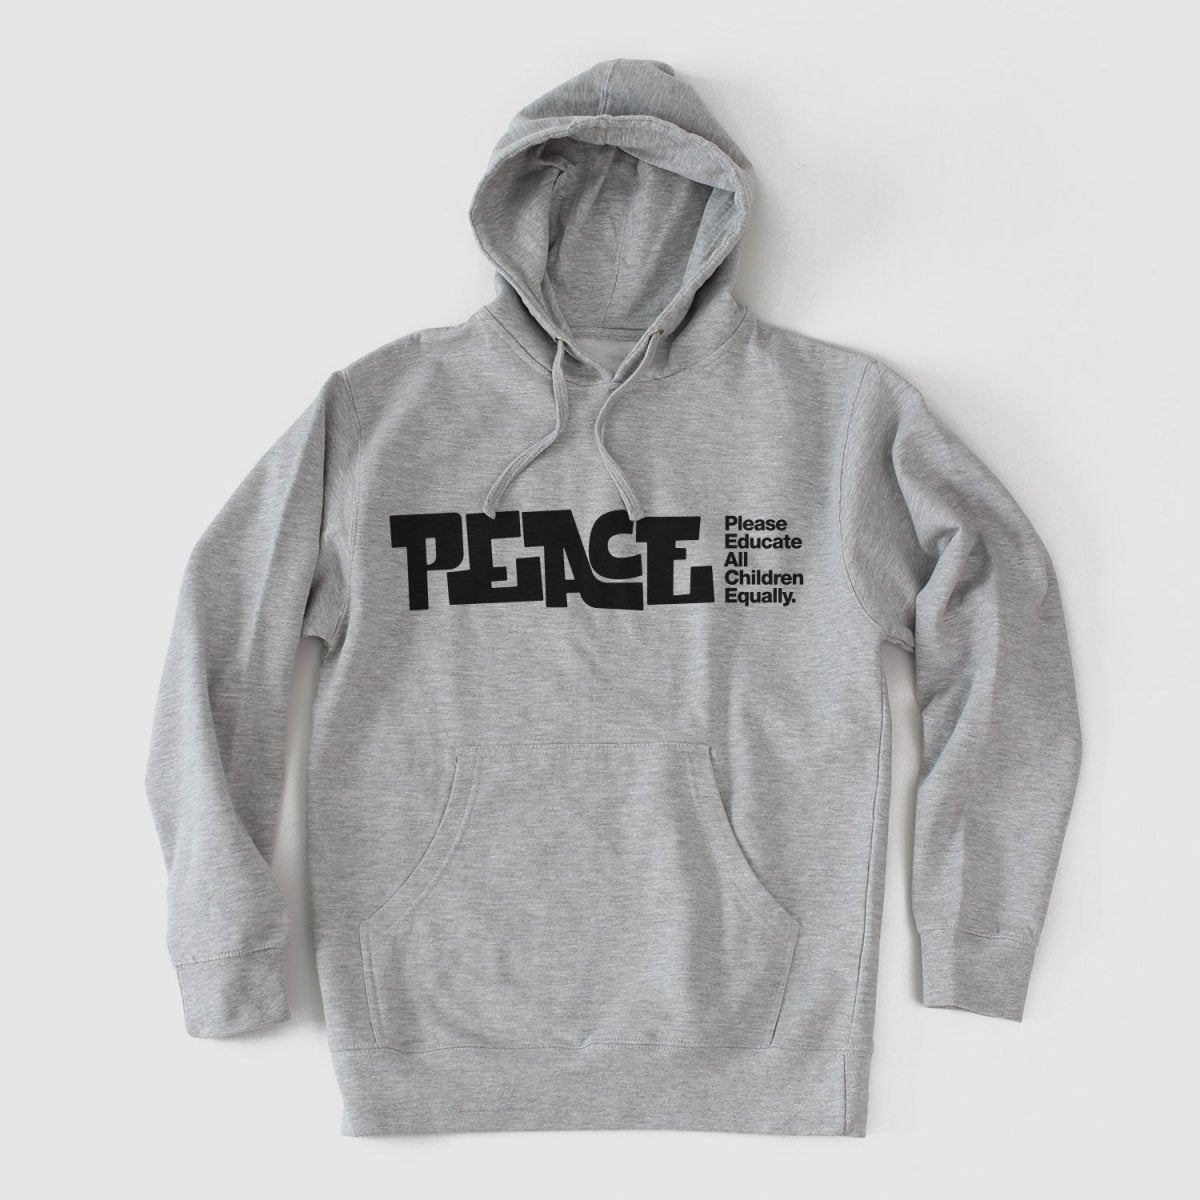 PEACE "Education" Hooded Fleece